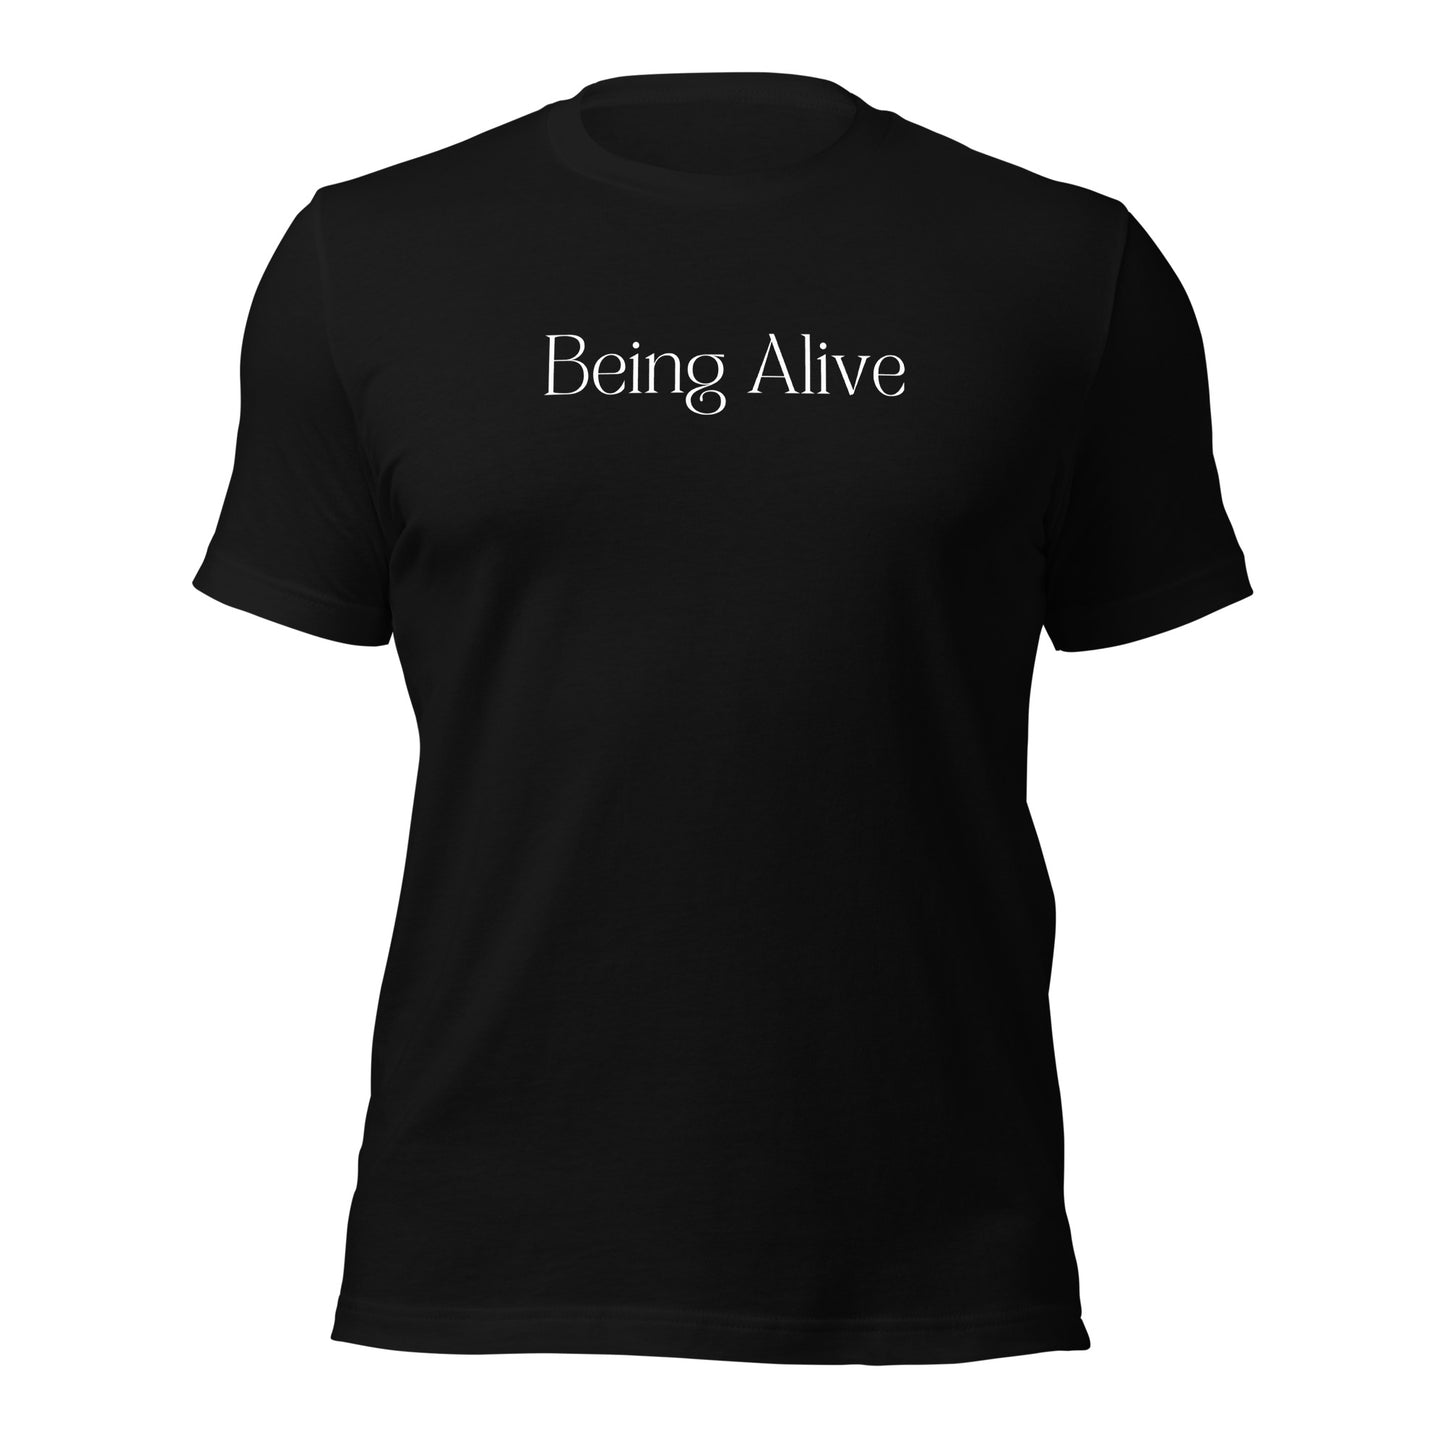 Being Alive - Designed by Zeeshan Waheed - izeeshanwaheed